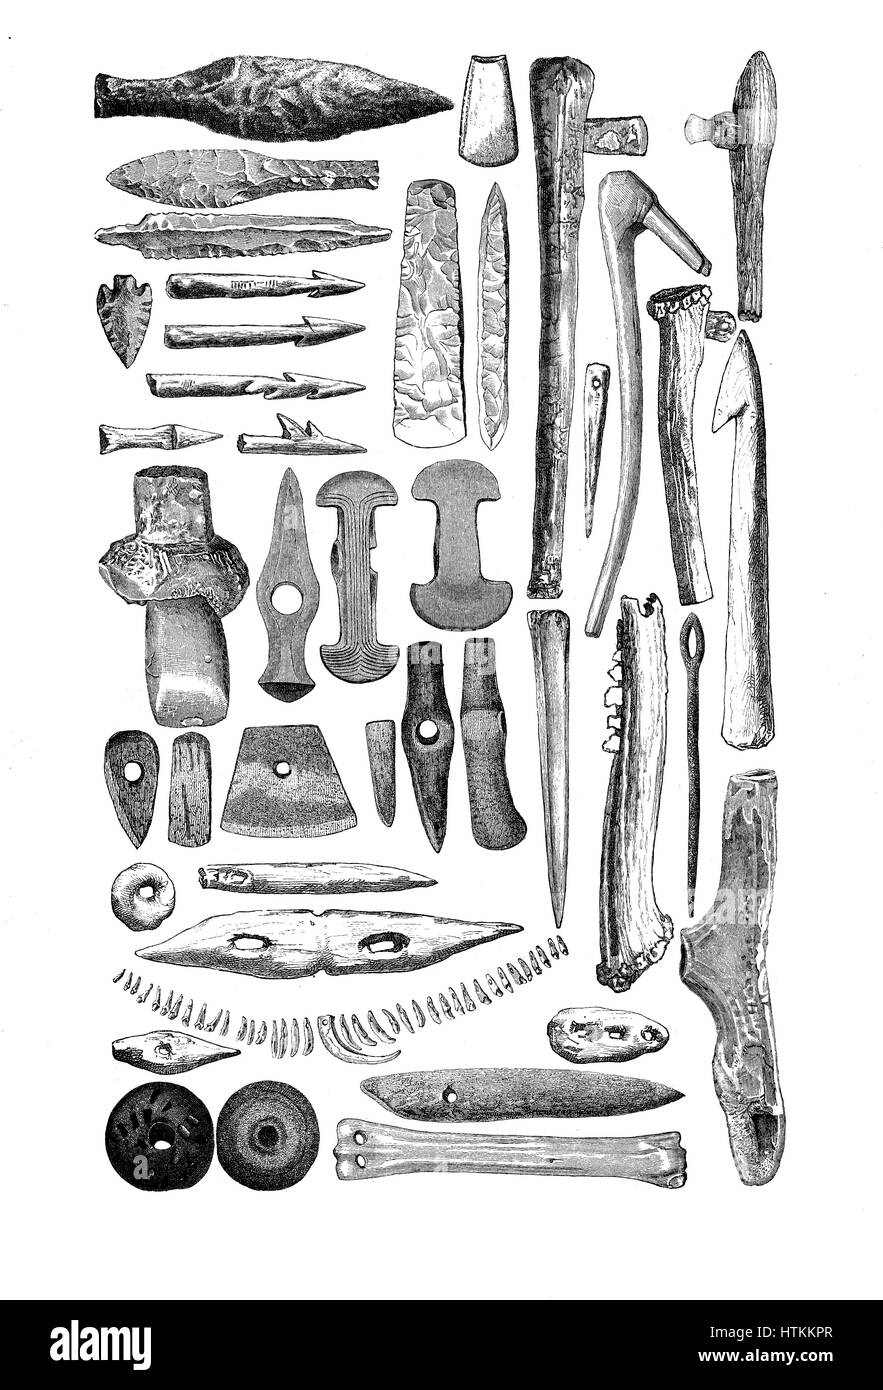 Grabado reproduciendo los artefactos, armas y herramientas hechas de hueso y piedra encontradas en tumbas de la edad de piedra prehistórica. Foto de stock